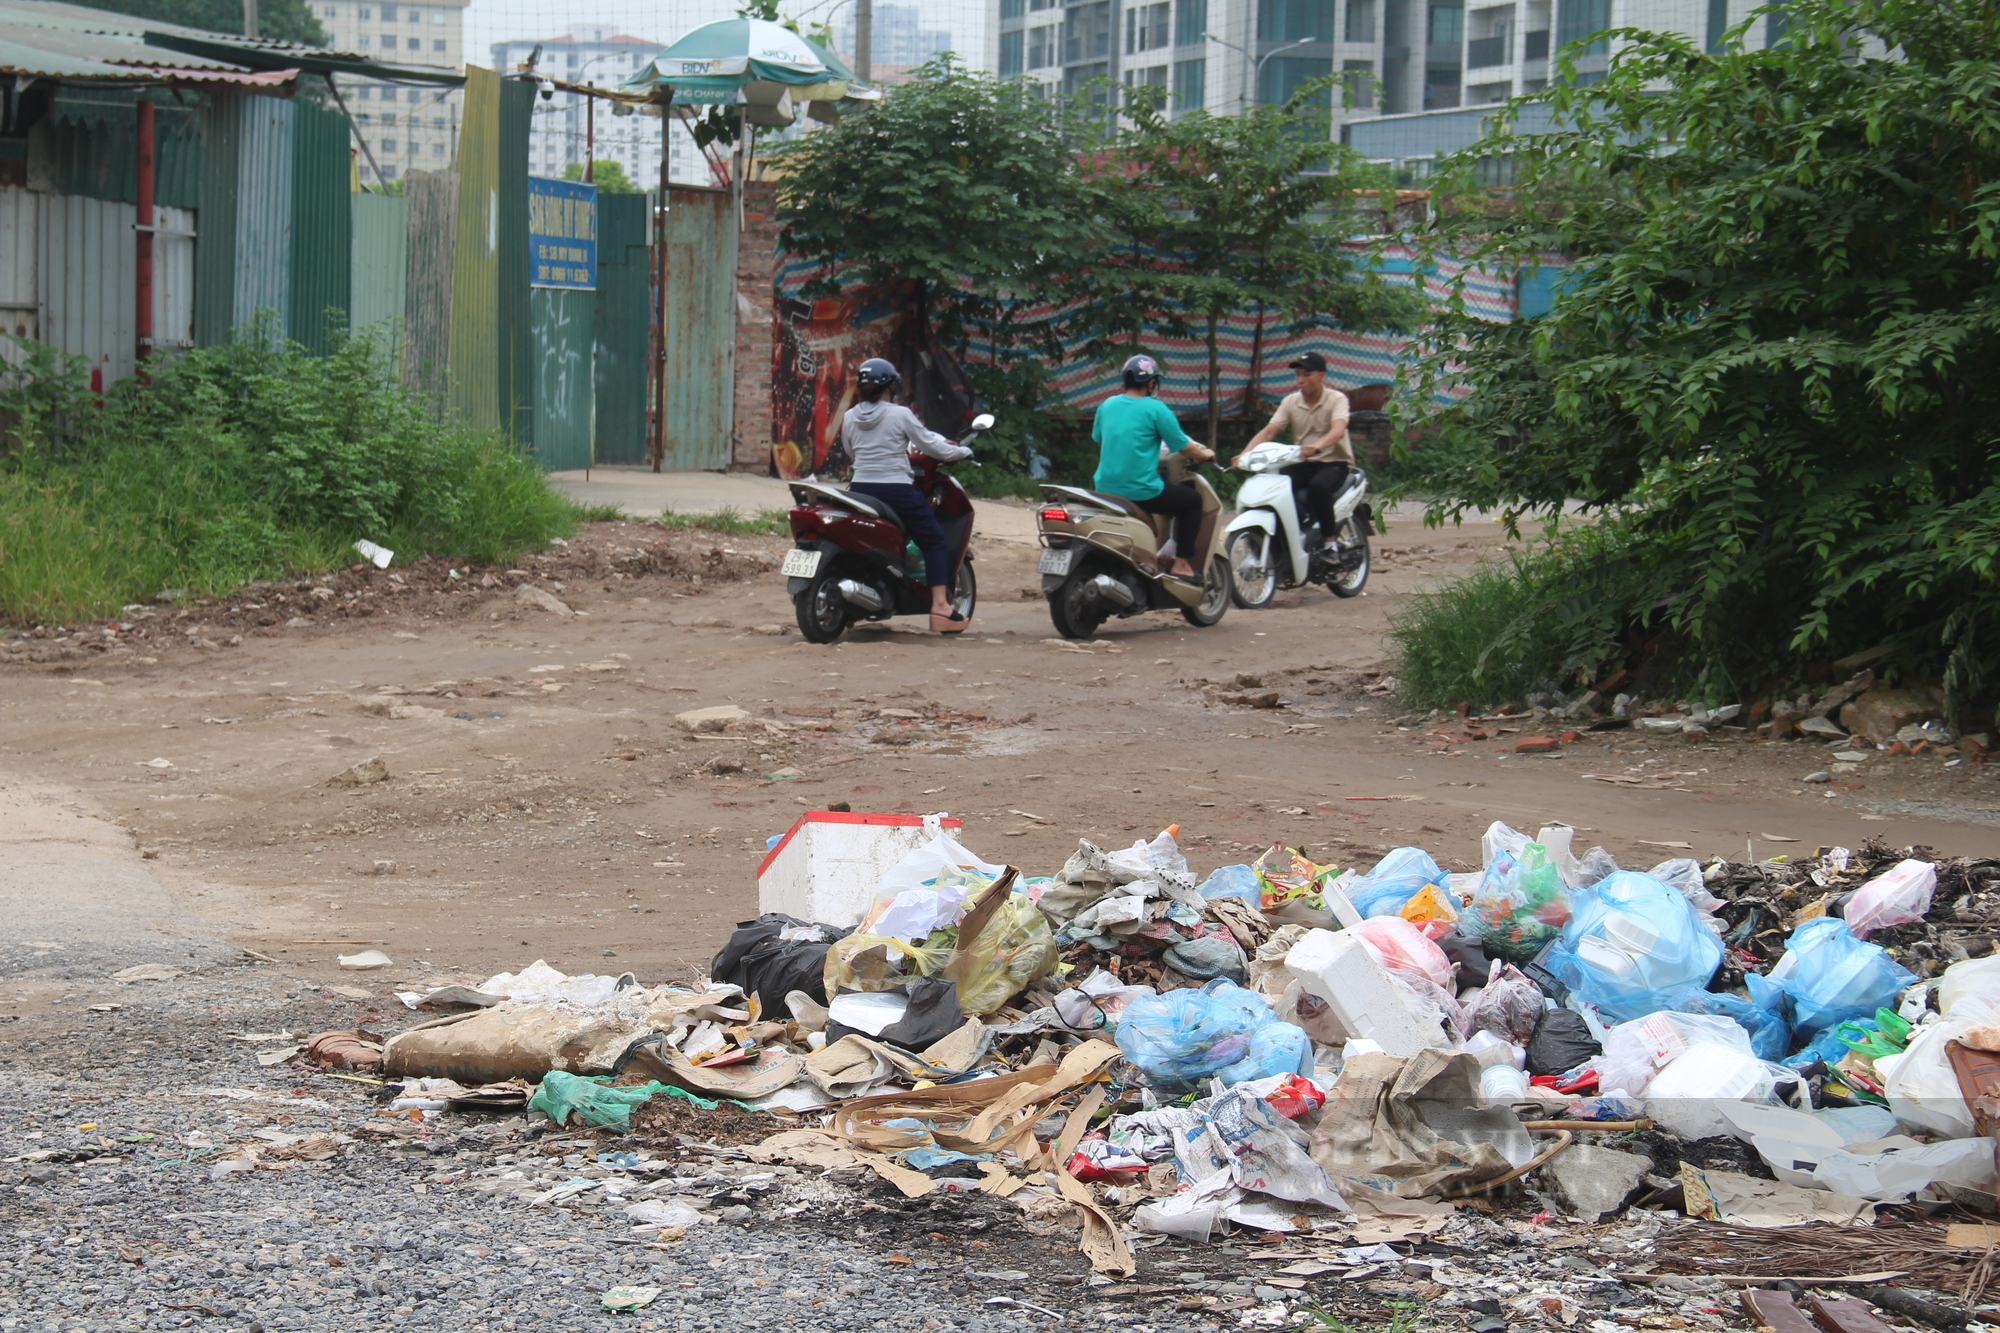 Bãi rác khổng lồ án ngữ trên tuyến đường trăm tỷ ở Thủ đô - Ảnh 6.